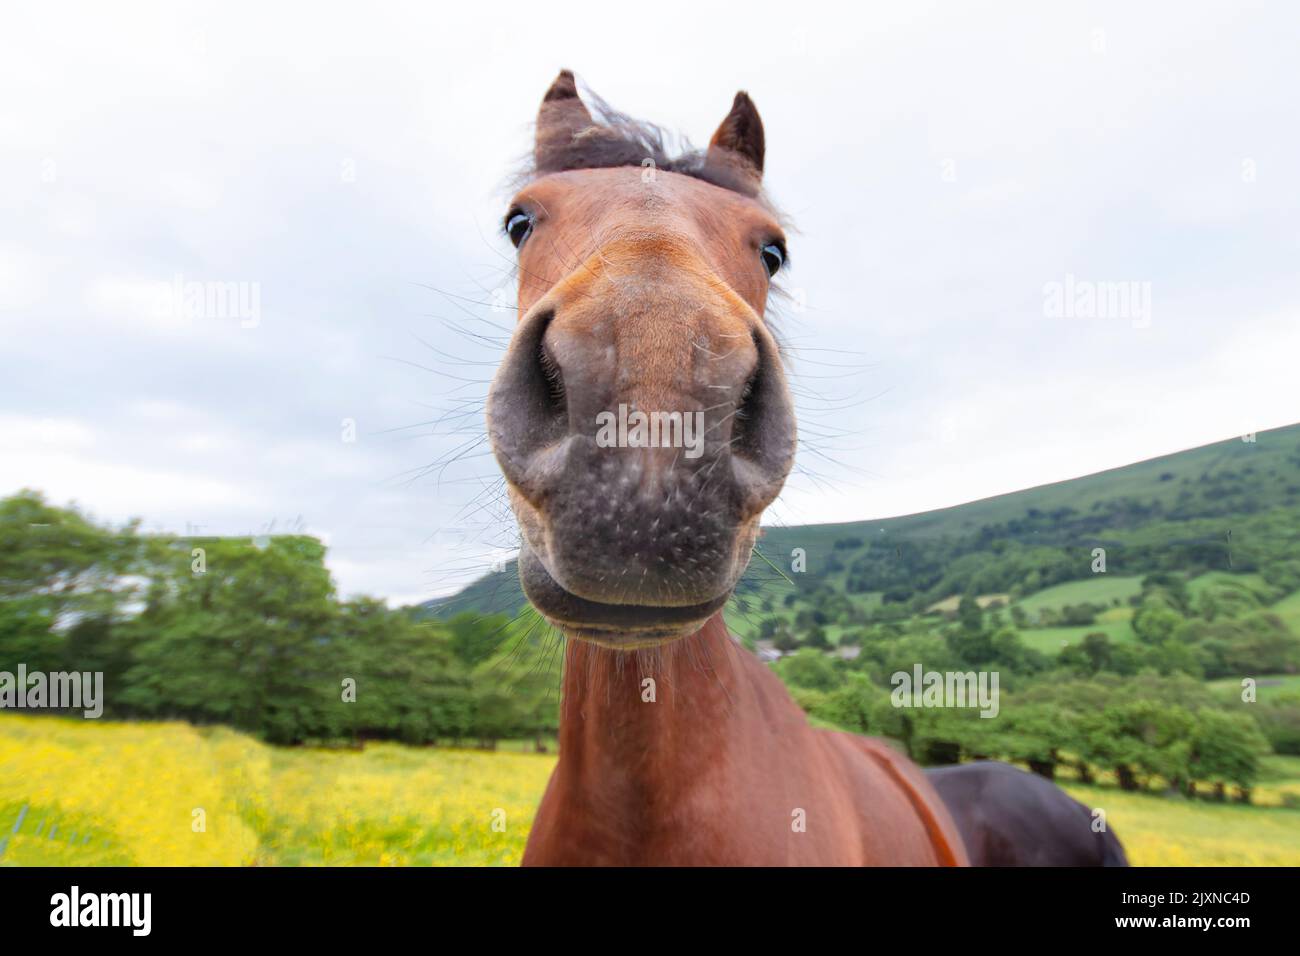 Una imagen de cerca de un simpático caballo curioso en el campo abierto. La imagen muestra el caballo castaño, con la cabeza mirando directamente a la cámara. Gales Reino Unido Foto de stock